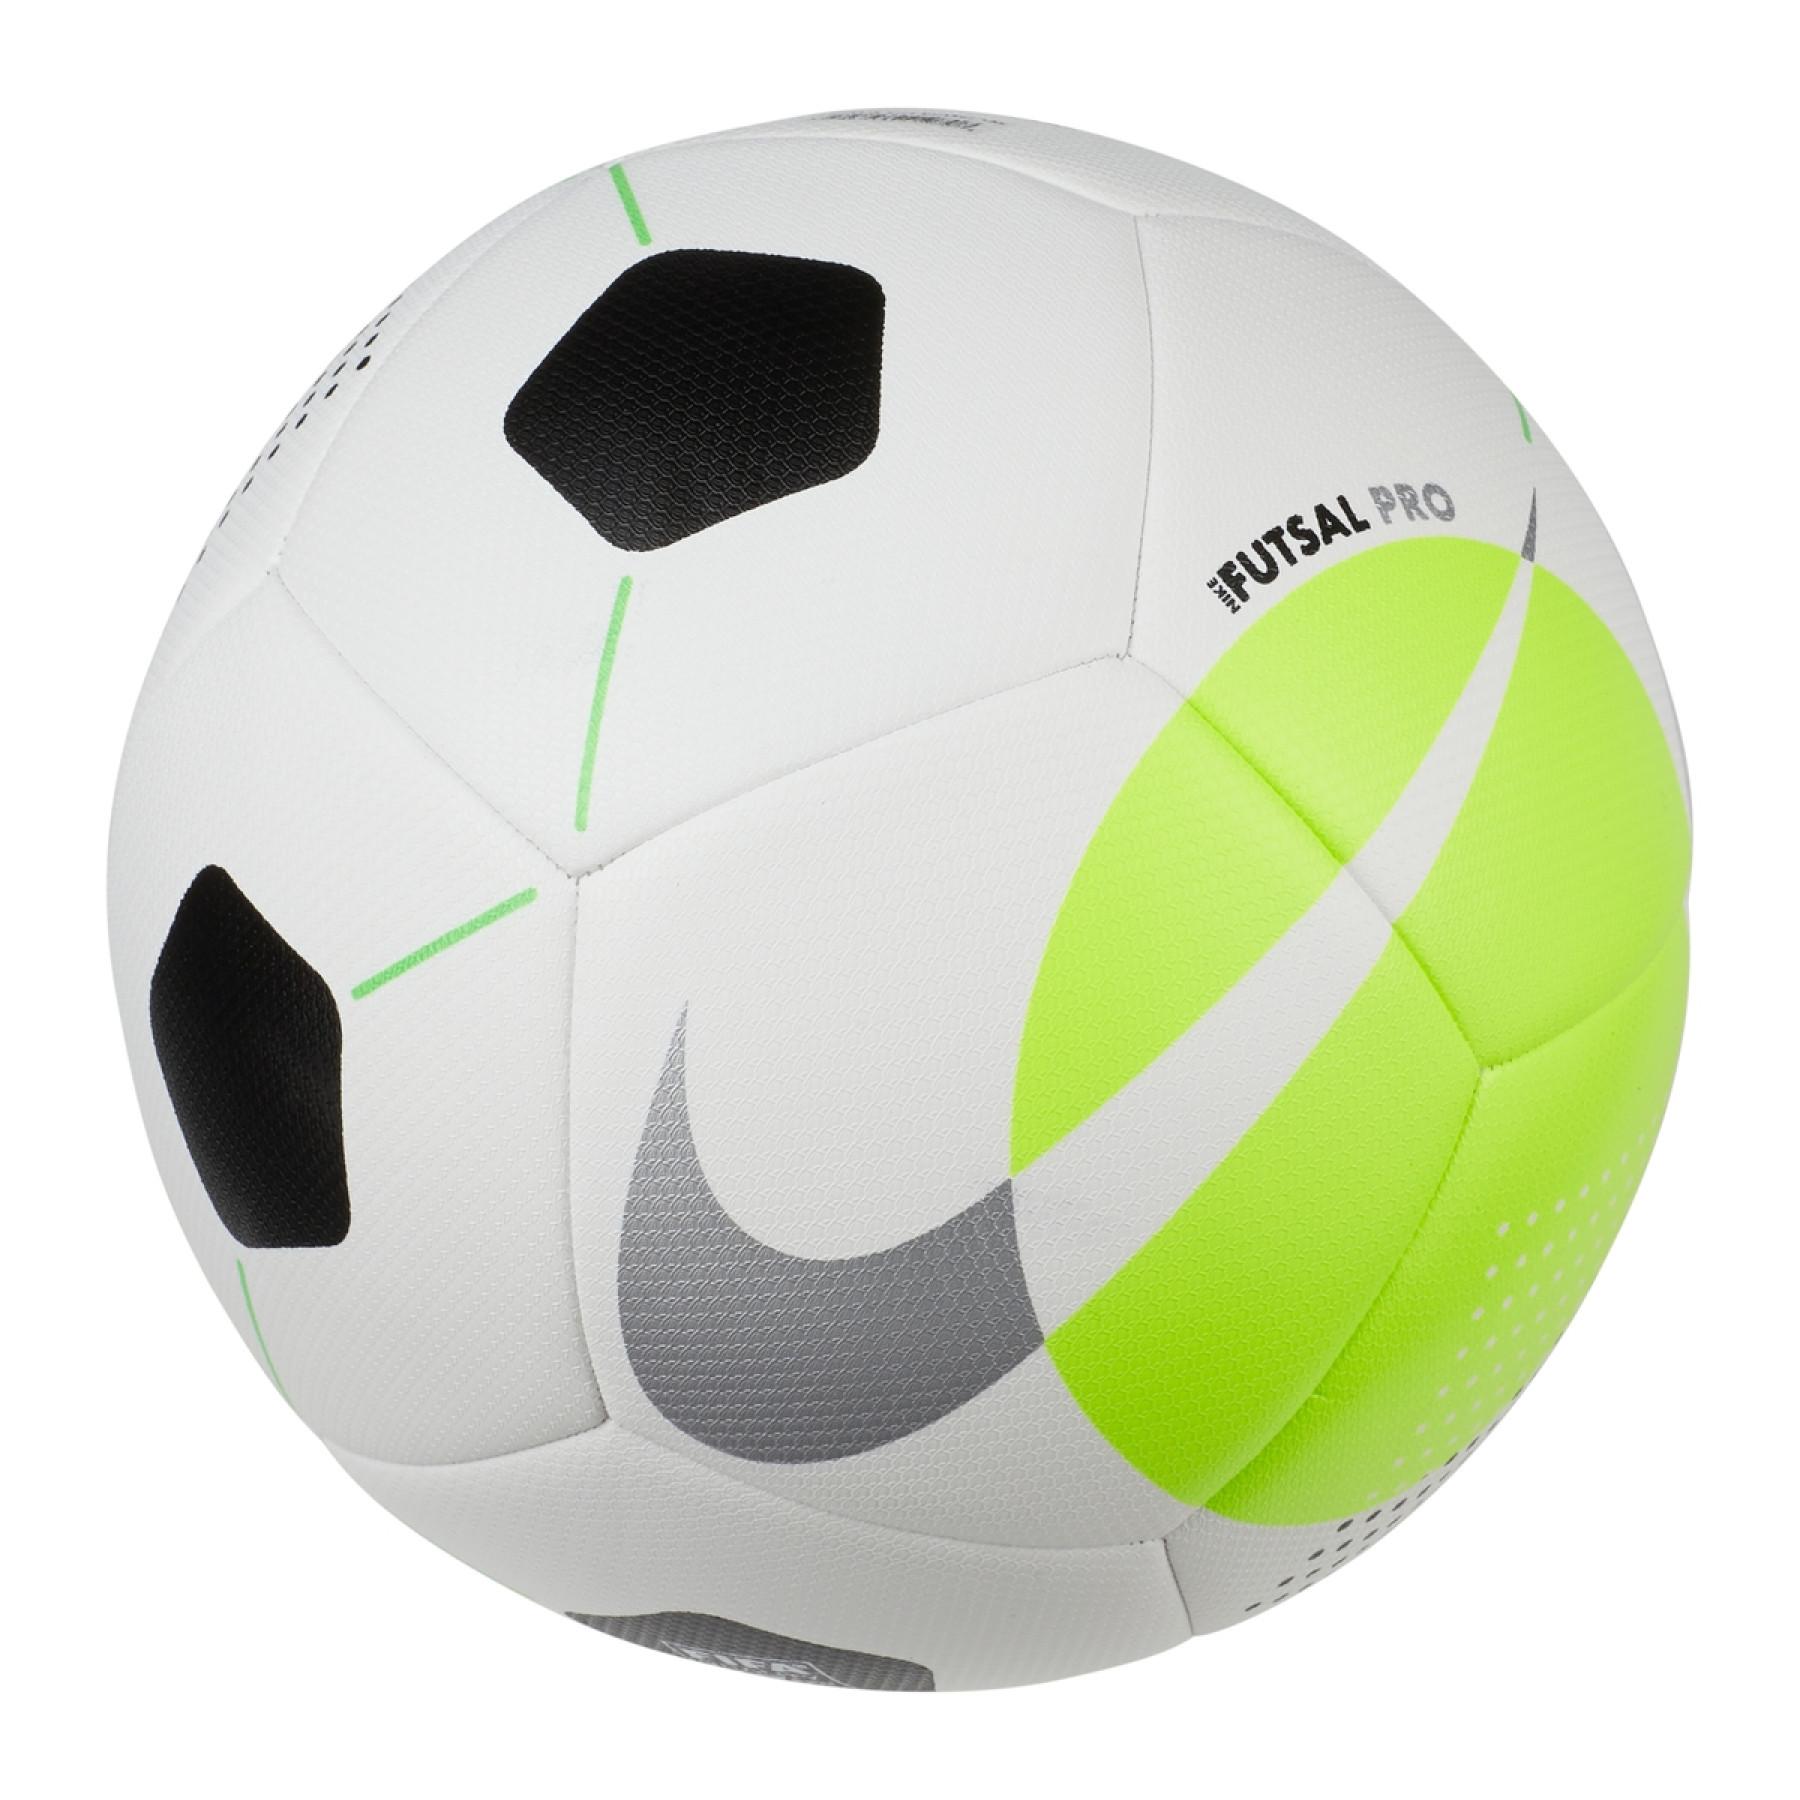 Ballon Nike Futsal Pro